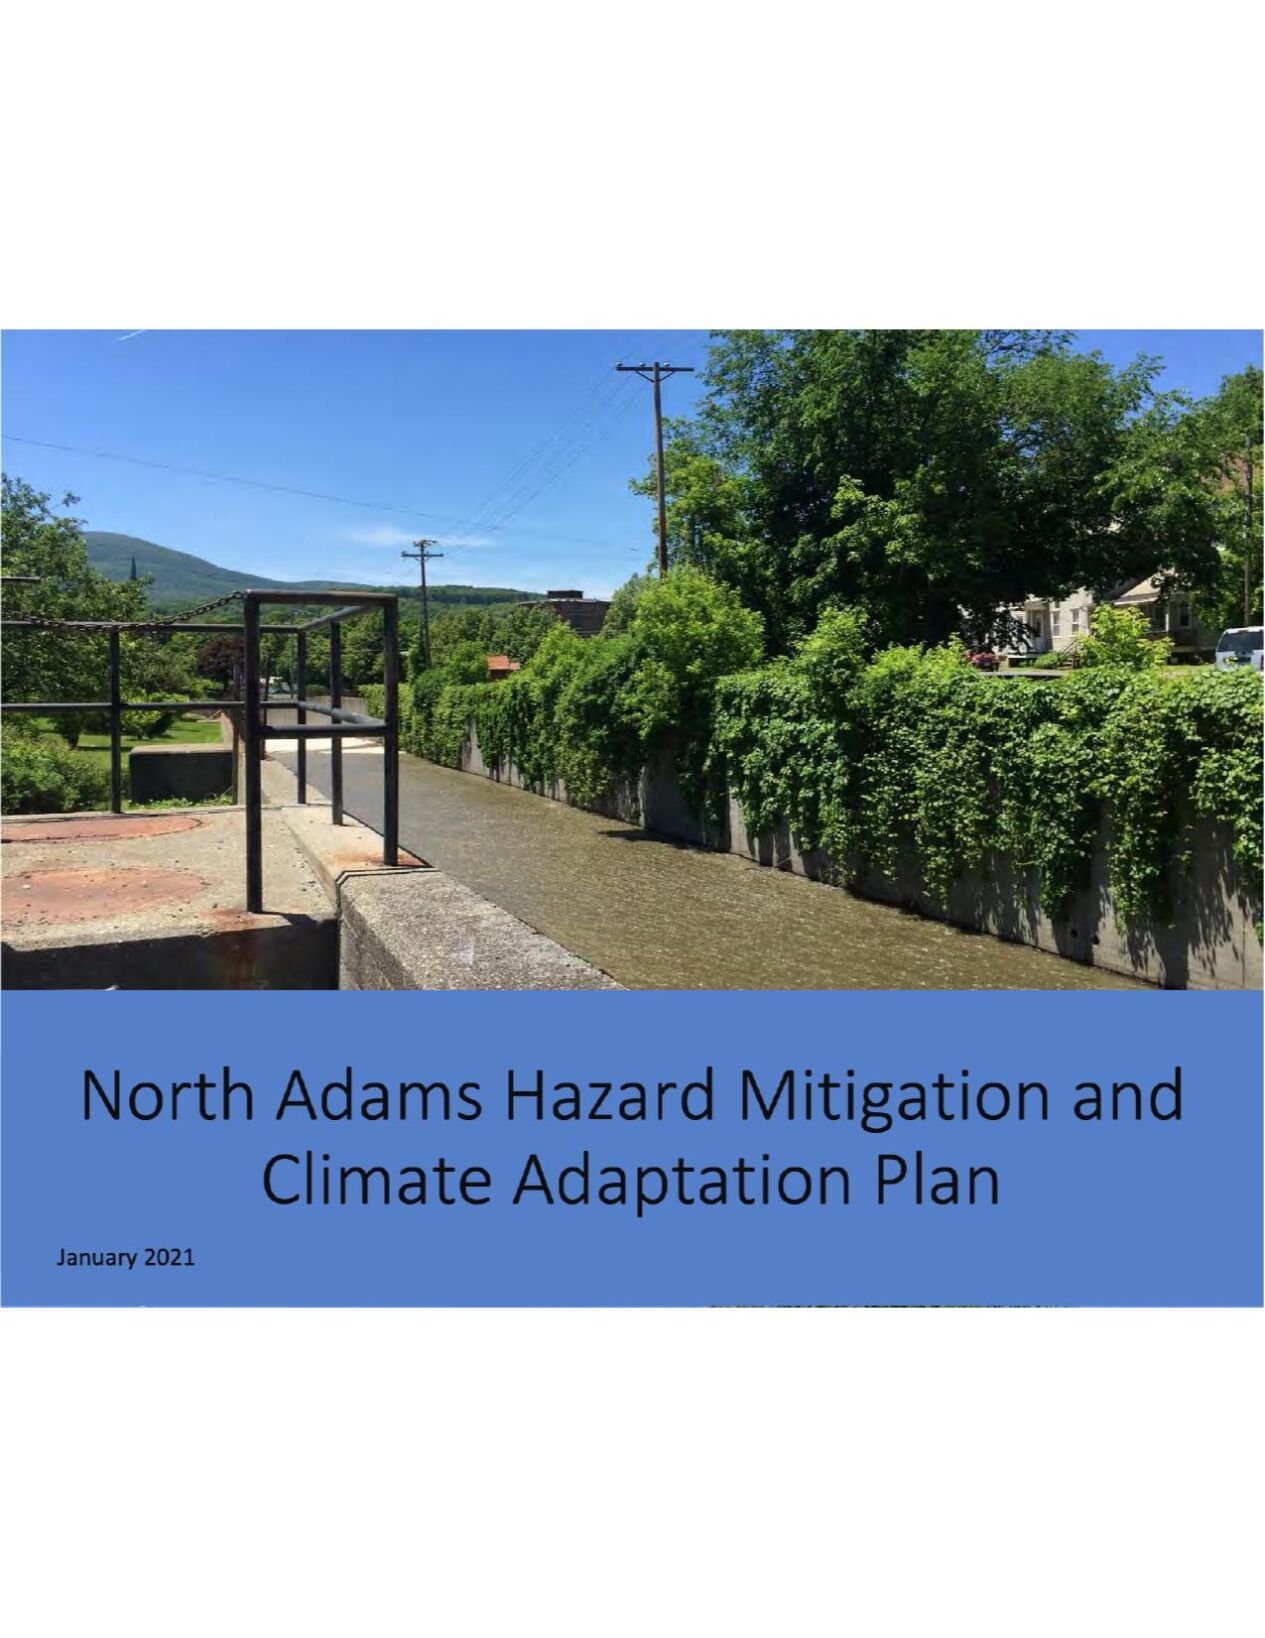 North Adams Hazard Mitigation and Climate Adaption Plan